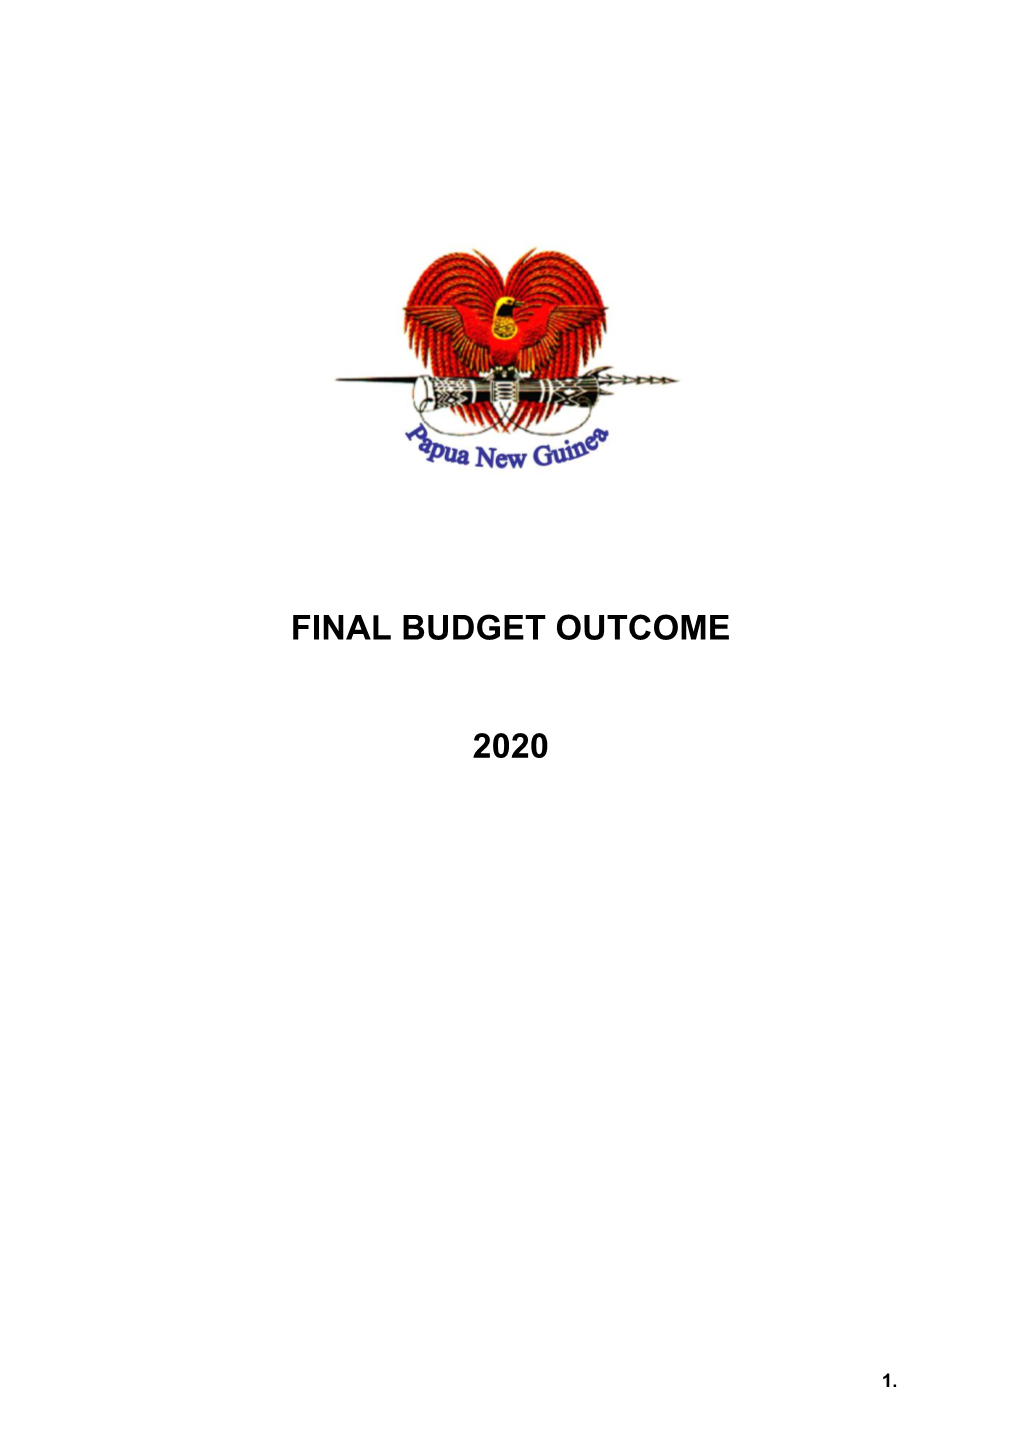 2020 Final Budget Outcome (Fbo)